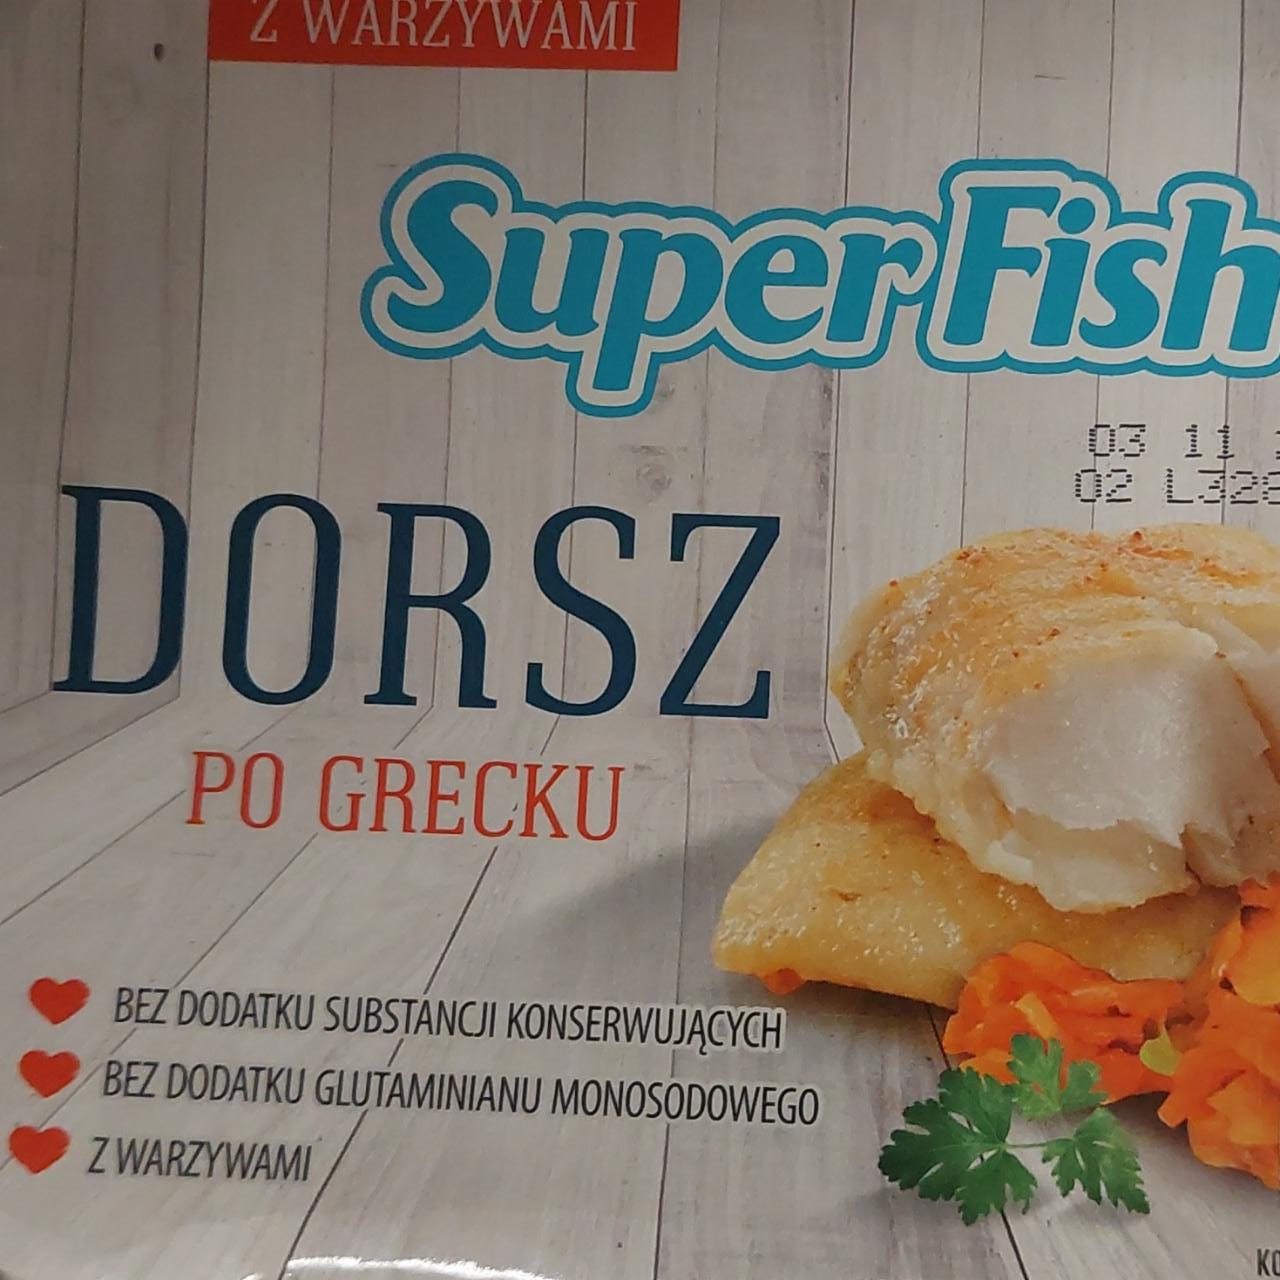 Zdjęcia - dorsz po grecku superfish